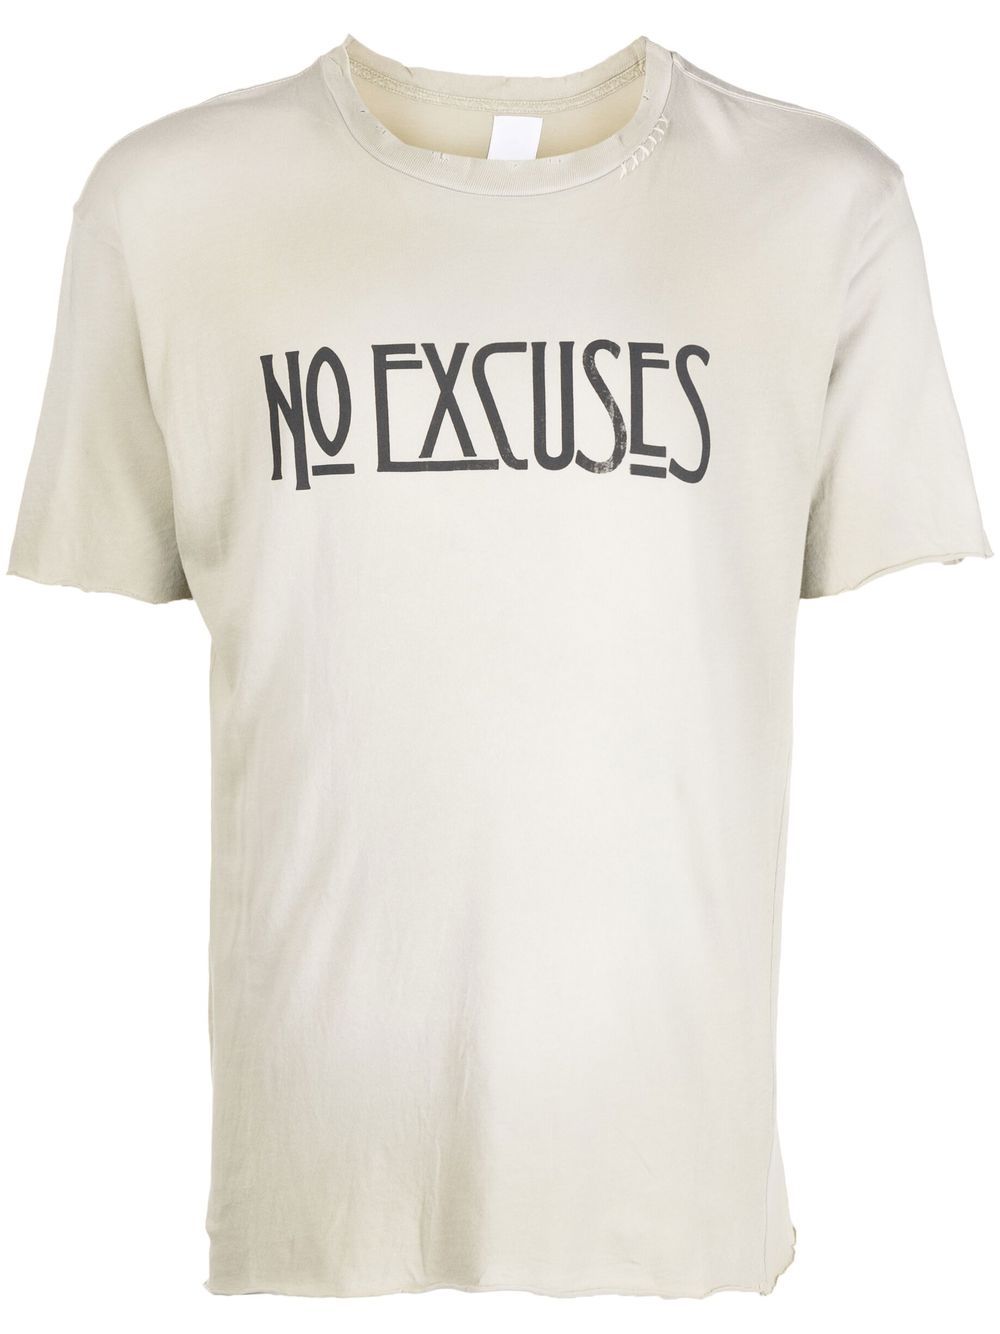 Alchemist 'no excuses' print cotton T-shirt - Grey von Alchemist